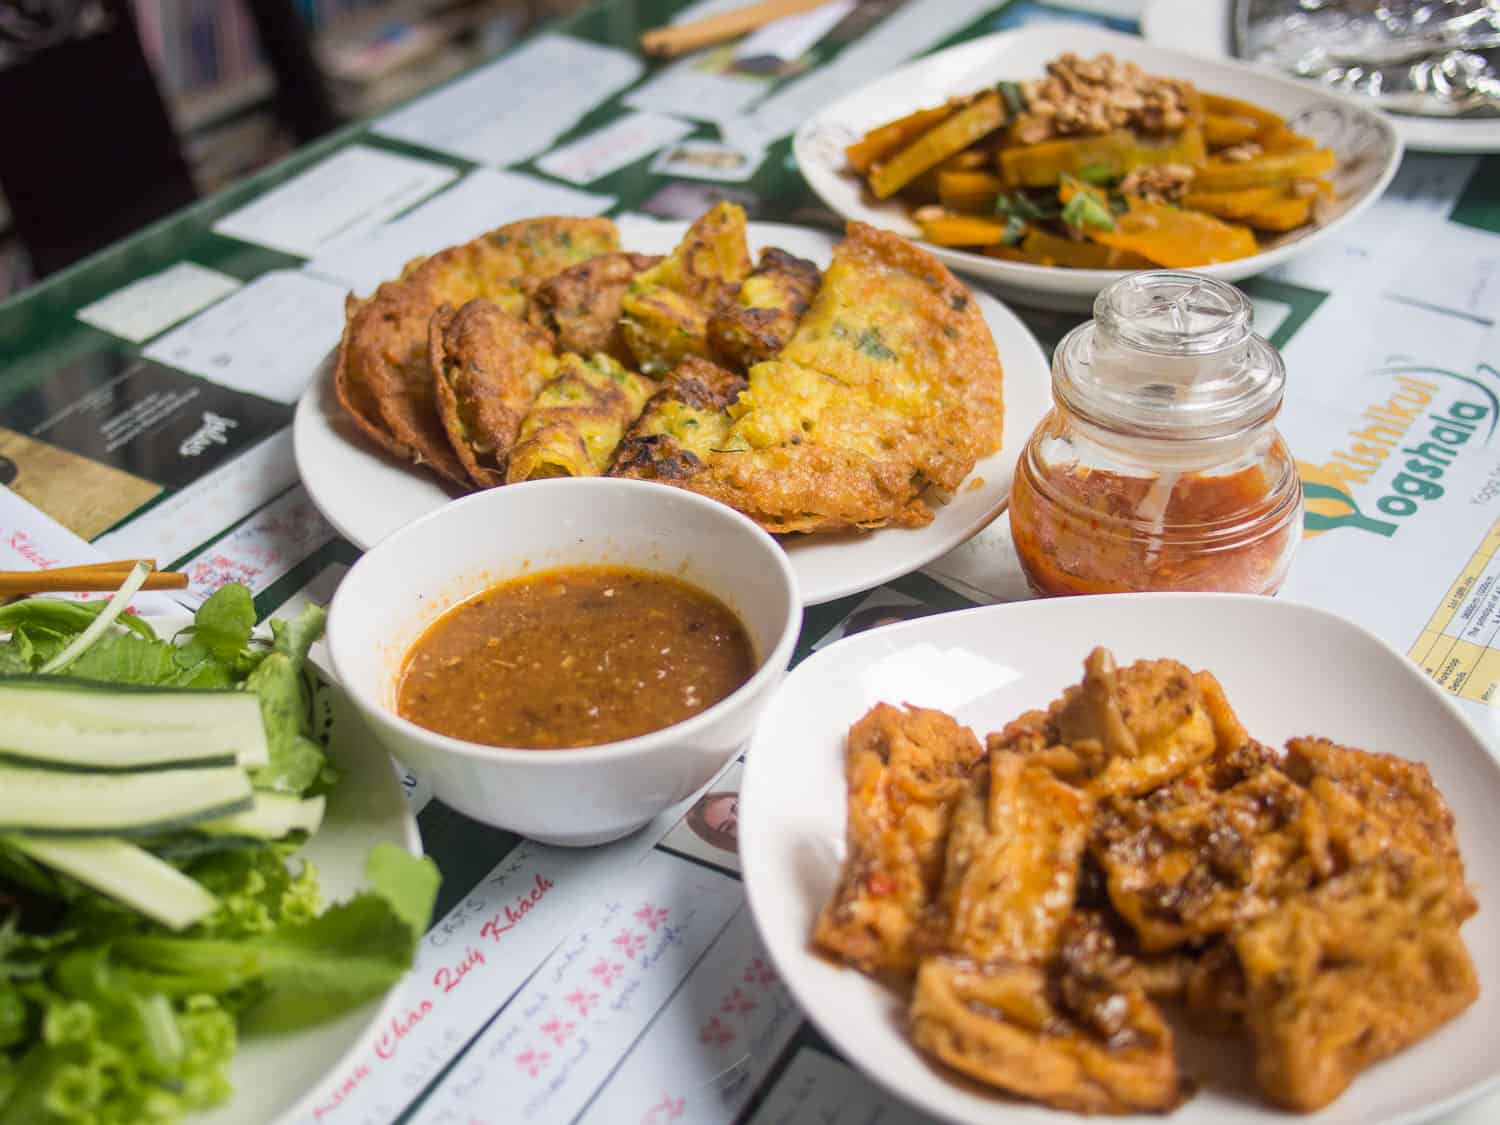 Hoi An vegetarian restaurants -Minh Hien